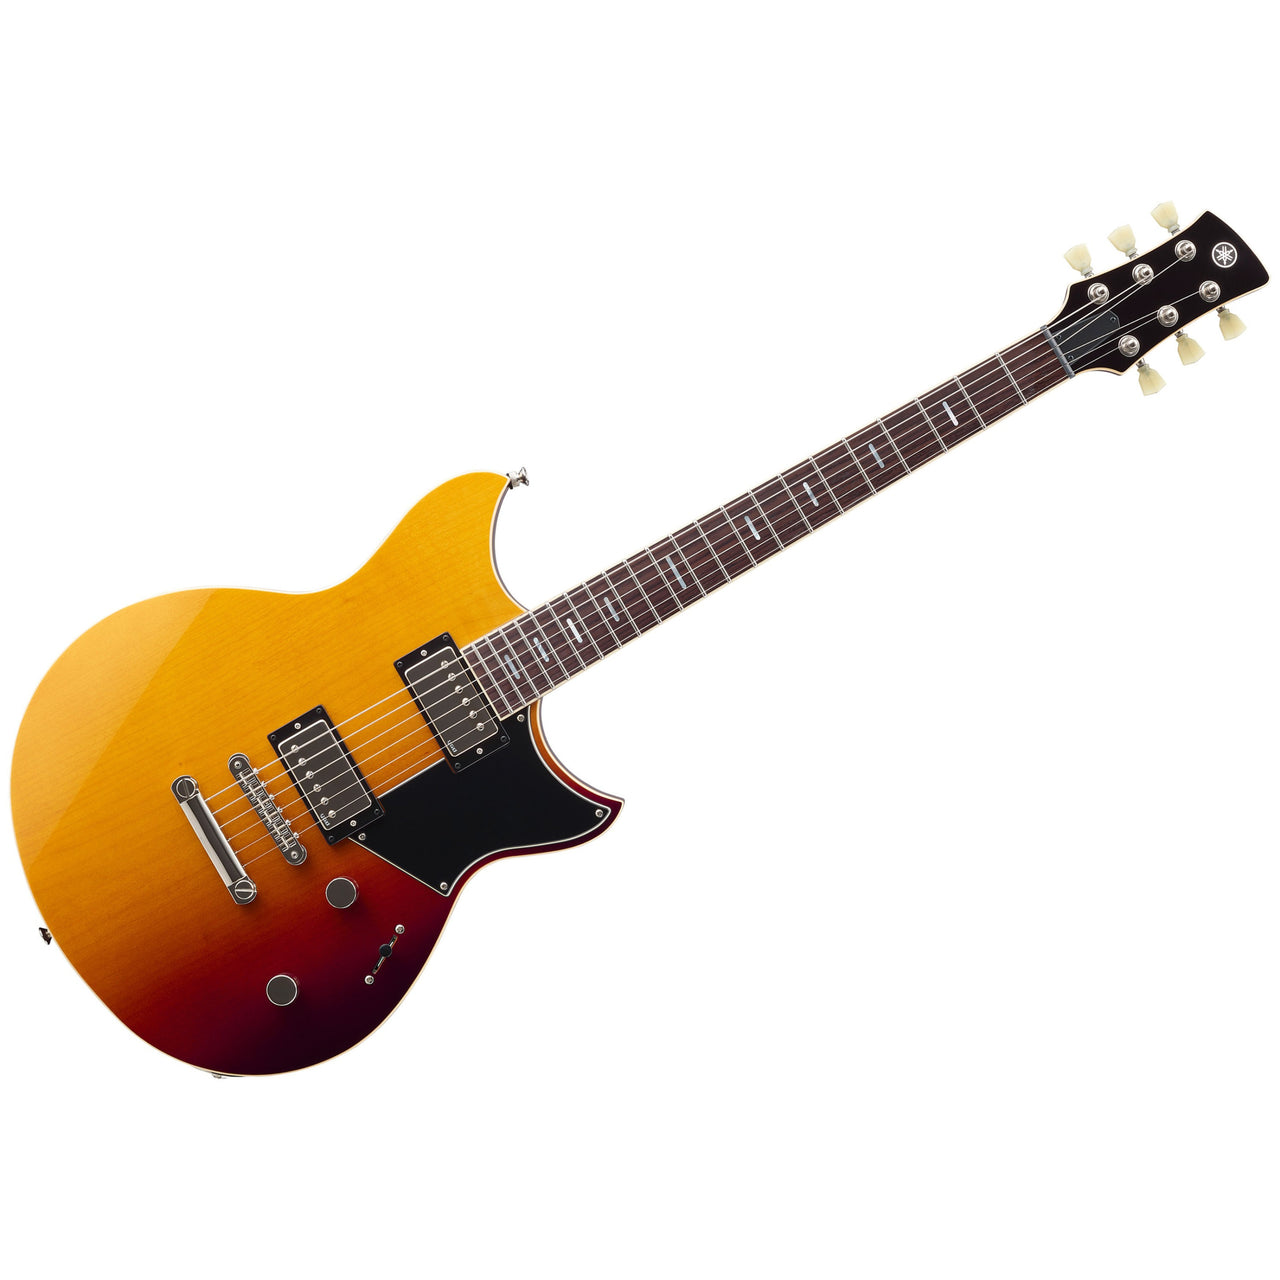 Guitarra Electrica Yamaha Revstar Standard Sunset Burst, Rss20ssb